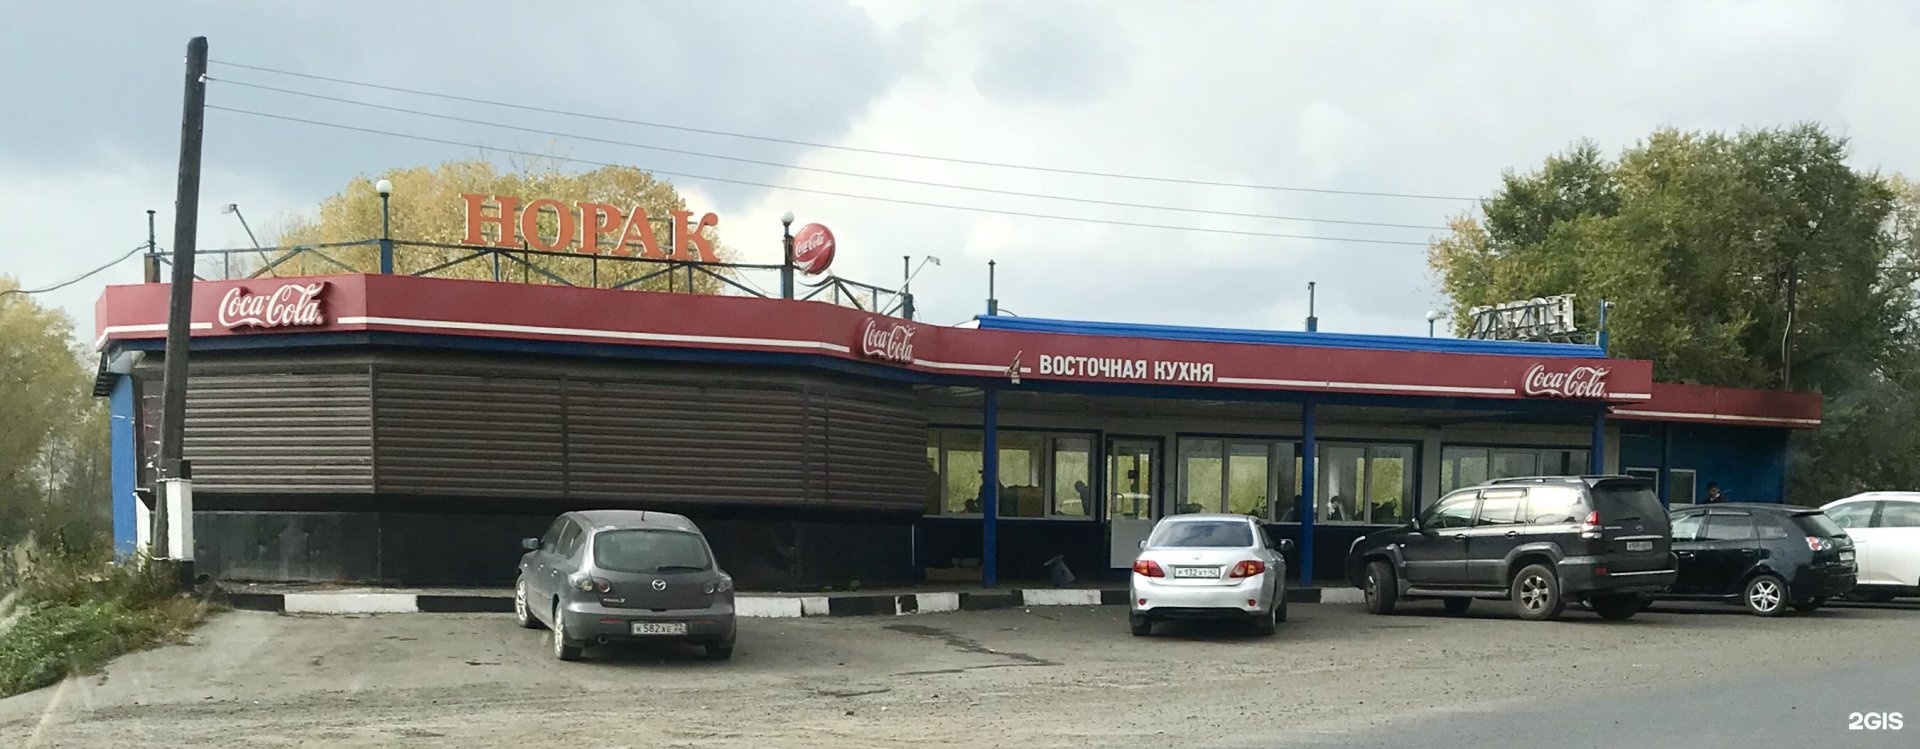 кафе в новокузнецке орджоникидзевский район